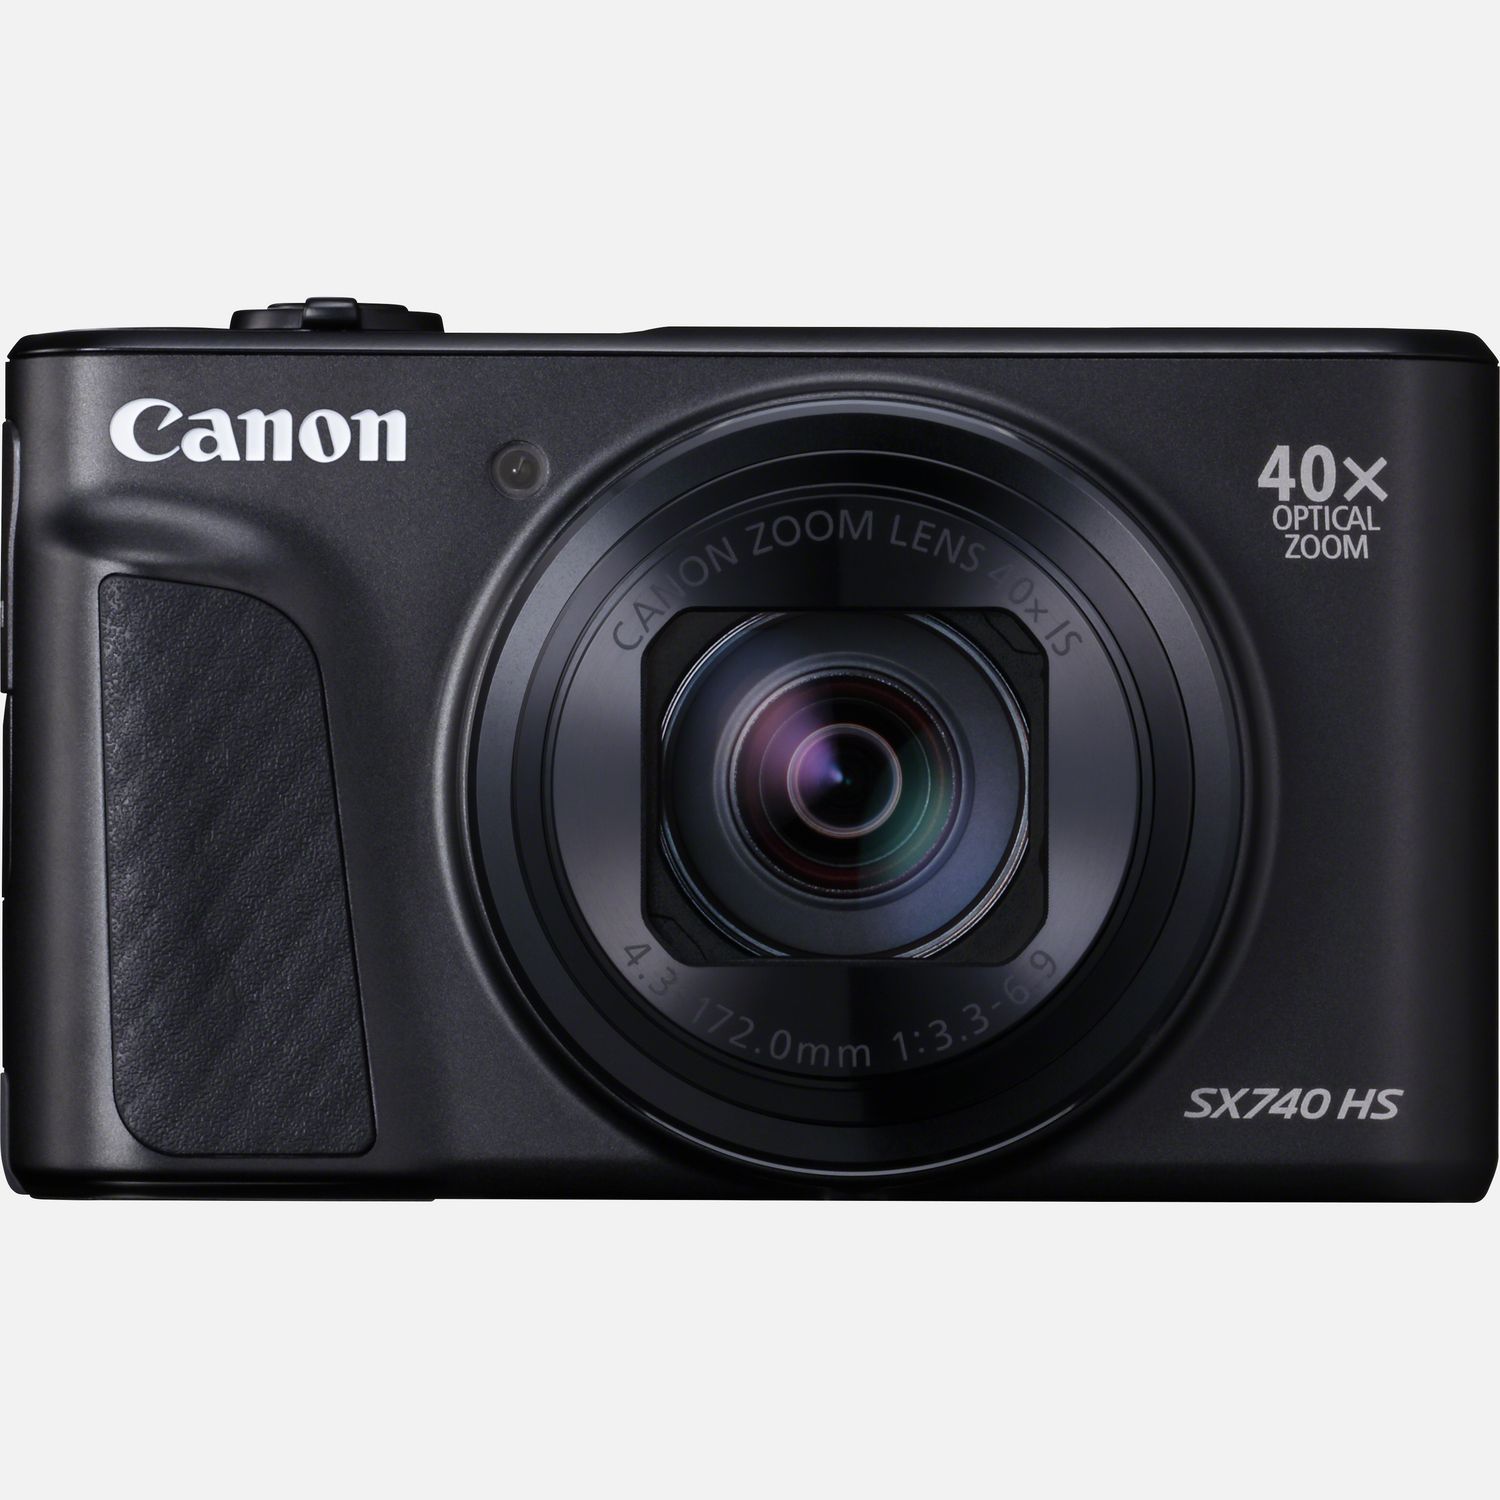 Mit der 39,9 mm tiefen, kompakten Canon PowerShot SX740 HS hast du alles in der Tasche, was du fr gute Aufnahmen brauchst. Mit dem 40fach optischen Zoom kannst du auergewhnliche Details in 20,3 Megapixeln festhalten  und ganz einfach ber WLAN und Bluetooth teilen. Du kannst unterwegs Movies mit beeindruckender 4K-Auflsung aufnehmen und der DIGIC 8 Prozessor hilft dabei, das perfekte Foto zu machen. Diese kleine, aber leistungsstarke Kamera verfgt ber einen unglaublich reaktionsschnellen Auslser und macht Reihenaufnahmen mit bis zu 10 Bildern pro Sekunde  damit dir keine Aufnahme entgeht.  Vorteile      Die nur 39,9 mm tiefe Canon PowerShot SX740 HS im Taschenformat bringt Motive mit dem 40fach optischem Zoom  mit ZoomPlus auf 80fach verdoppelt  und einem 20,3 Megapixel CMOS-Sensor ganz nah heran.          Die PowerShot SX740 HS erfasst auch unterwegs alles in kristallklaren Details, dank der brillanten 4K Ultra High Definition Movieauflsung. Mit dem integrierten Stereomikrofon kannst du auch den Ton fr deine Videos aufnehmen          Einfach Motiv anvisieren und auslsen  der einzigartige DIGIC 8 Prozessor verwaltet automatisch die Kameraeinstellungen wie Hybrid Auto und Zoom-Assistent          Dank des extrem reaktionsschnellen Auslsers und der Reihenaufnahmen mit bis zu 10 Bildern pro Sekunde hltst du jeden Moment fest  oder mach mal eine Pause von der Action, um ein Selfie mit dem Selbstportrt-Modus und dem klappbaren LCD aufzunehmen          Teile Fotos ganz einfach ber die erweiterte Bluetooth- und WLAN-Konnektivitt und sichere deine Erinnerungen mit Auto Transfer, das automatisch ein Backup von deinen Aufnahmen auf dem Computer Zuhause oder einem anderen kompatiblem Gert erstellt.          Lieferumfang       PowerShot SX740 HS  Schwarz         Handschlaufe WS-800         Akku NB-13L         AkkuladegertCB-2LHE         Netzkabel         Anleitungen              Technische Daten              Groer 40fach optischer Zoom                Canon DIGIC 8 Prozessor und CMOS-Sensor                20,3 Megapixel                Reihenaufnahmen mit bis zu 10 Bildern pro Sekunde                5-achsige-Bildstabilisierung                Um 180 klappbares LCD                Bluetooth                WLAN-Konnektivitt                4K Ultra High Definition Movies          Alle technischen Daten zeigen